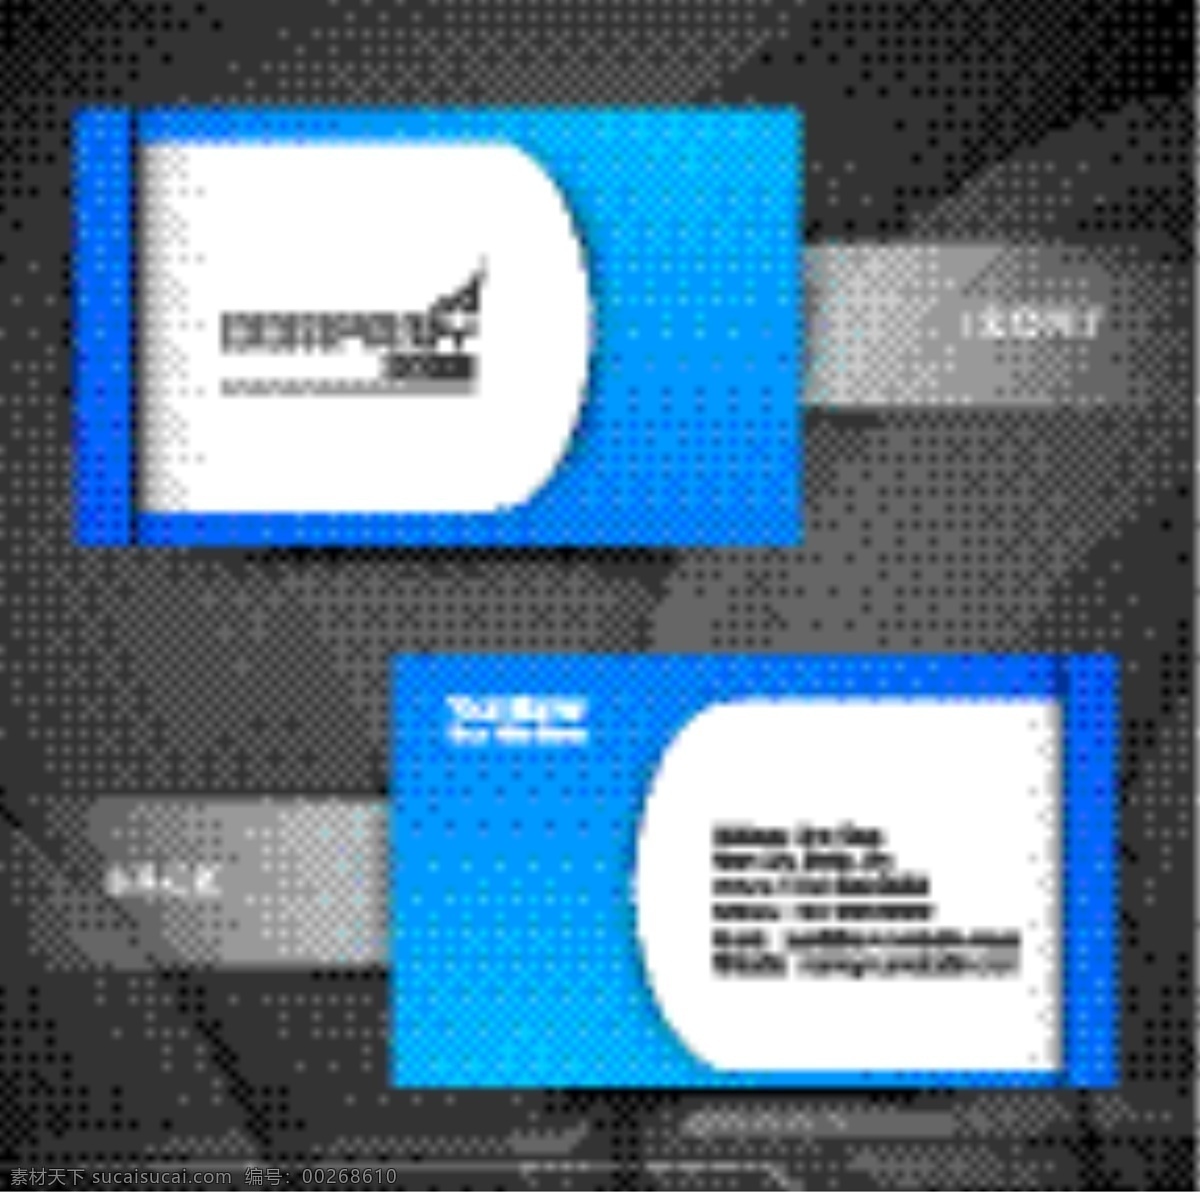 企业 名片 模板 简洁蓝色背景 名片模板下载 矢量图 名片卡 广告设计名片